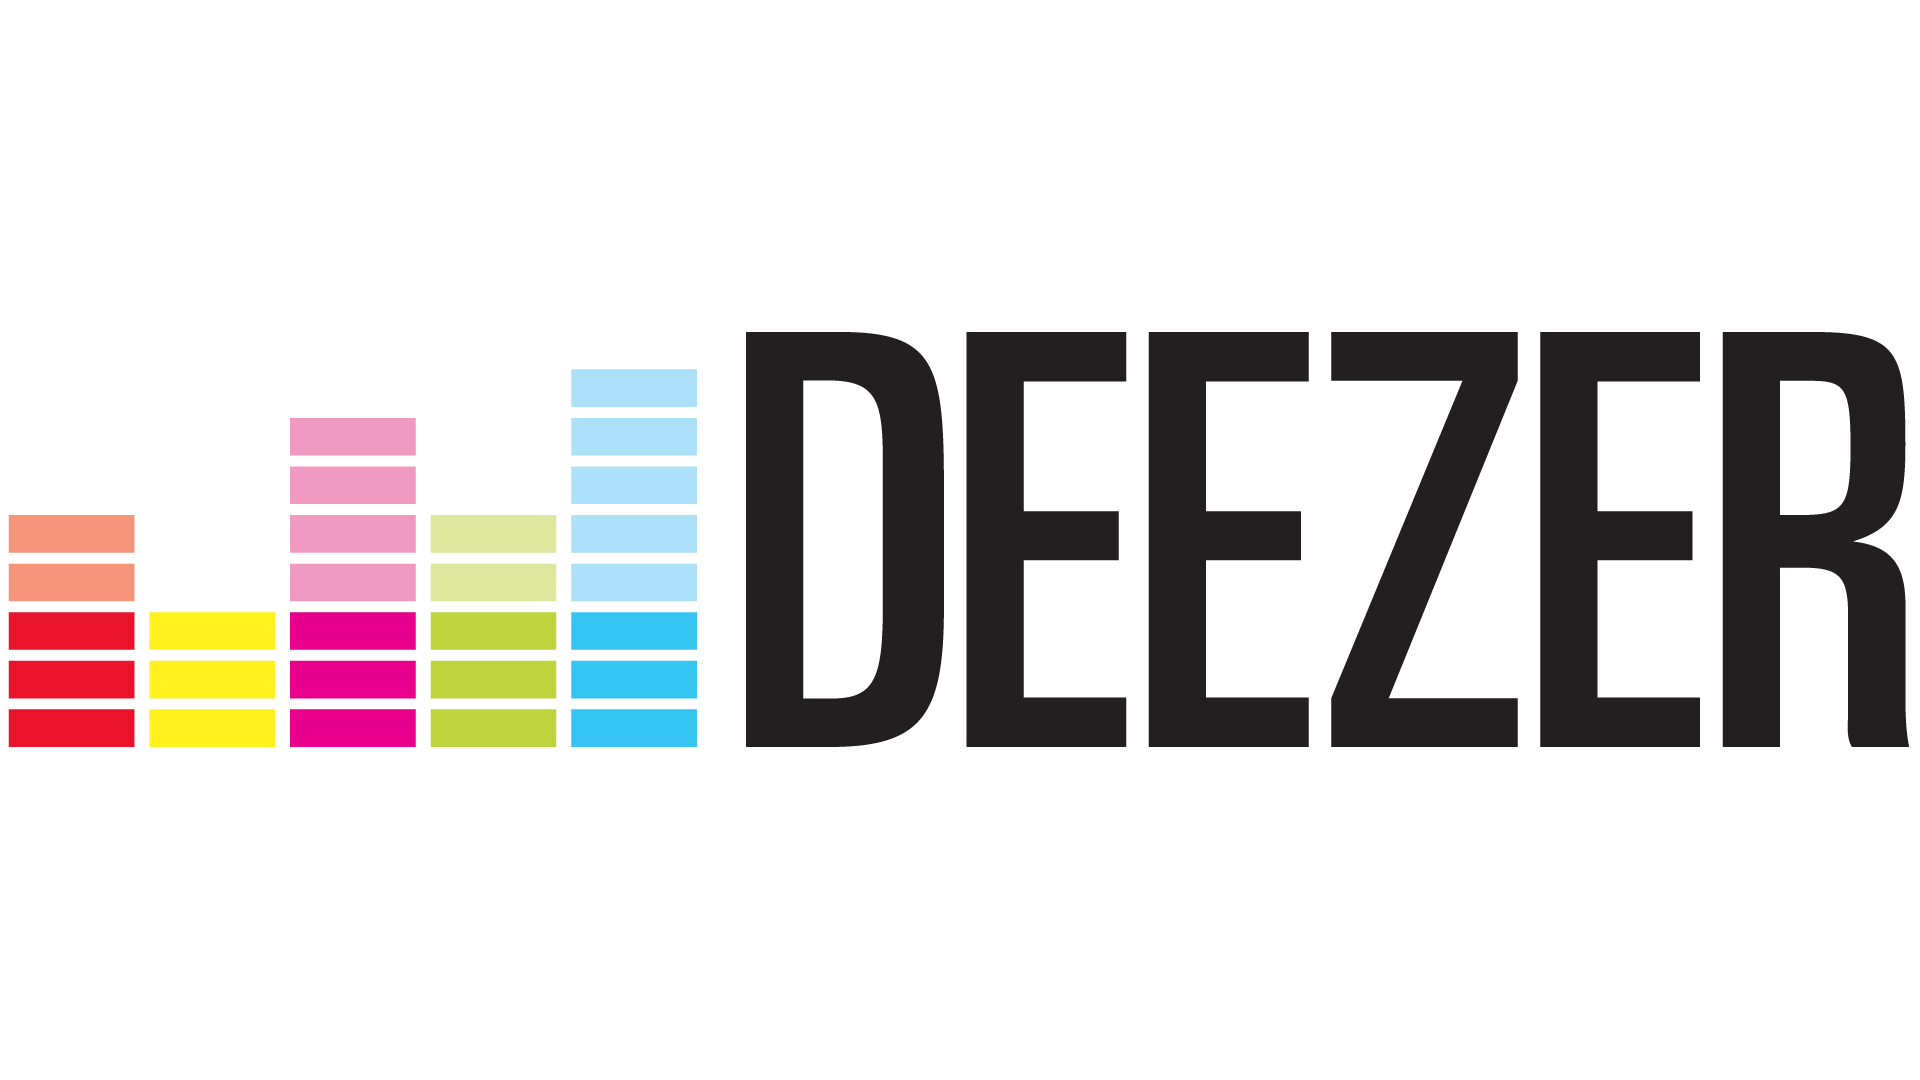 logo deezer.png (10 KB)